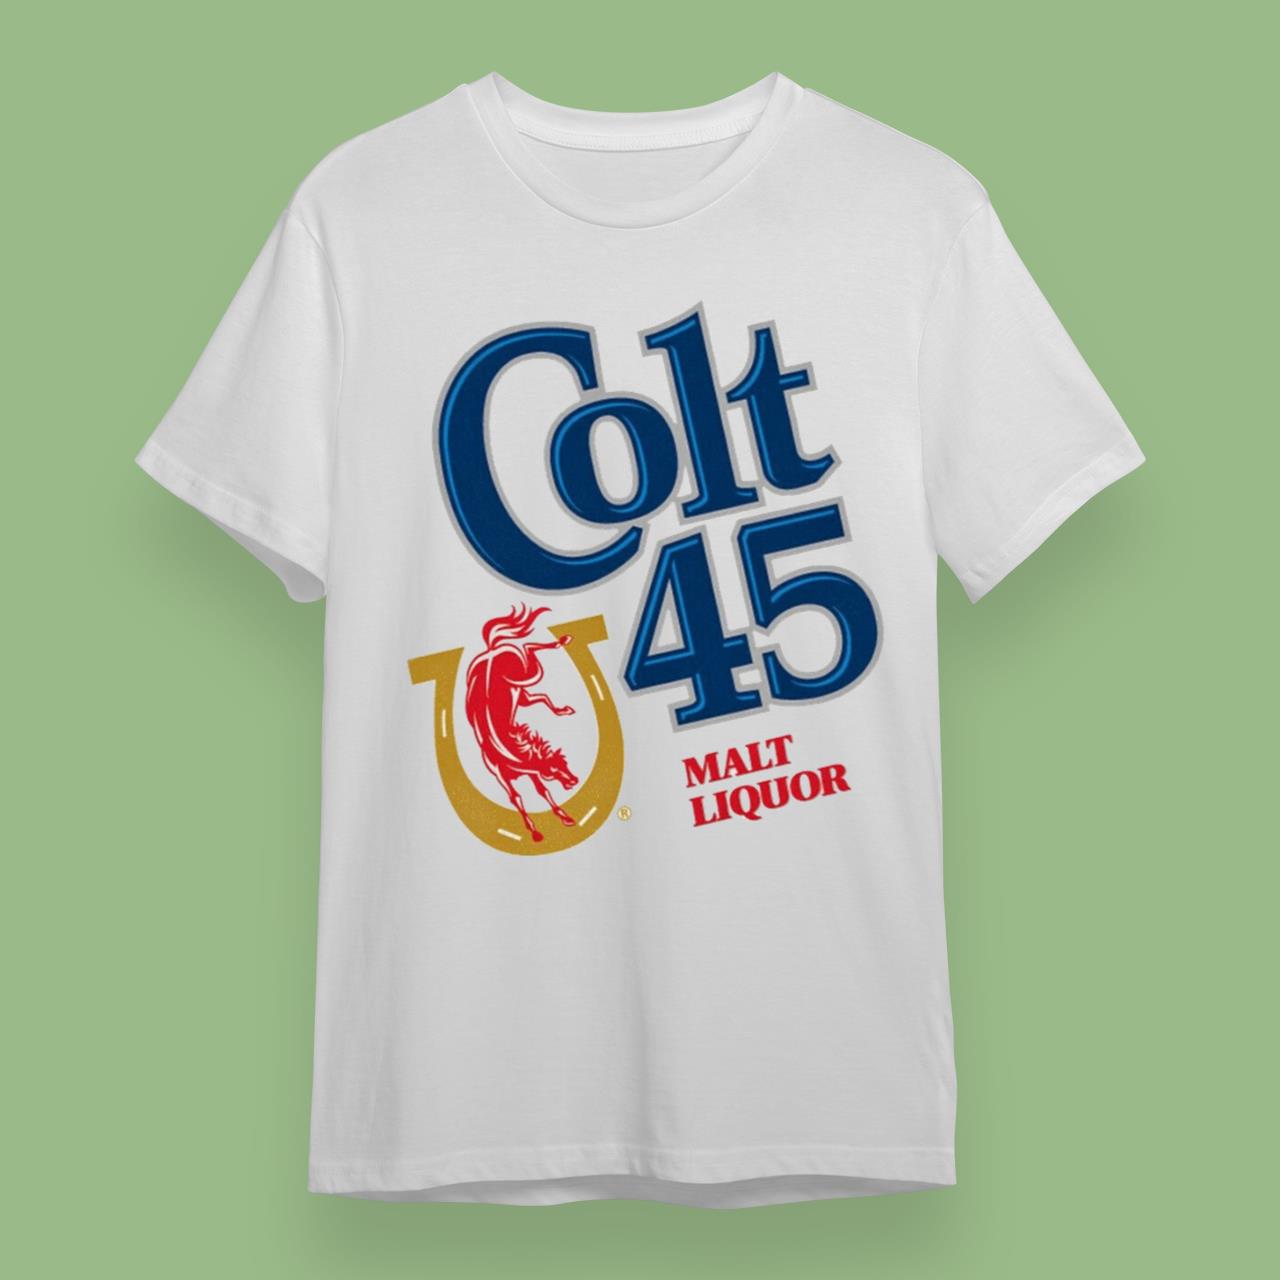 Colt 45 Shirt 